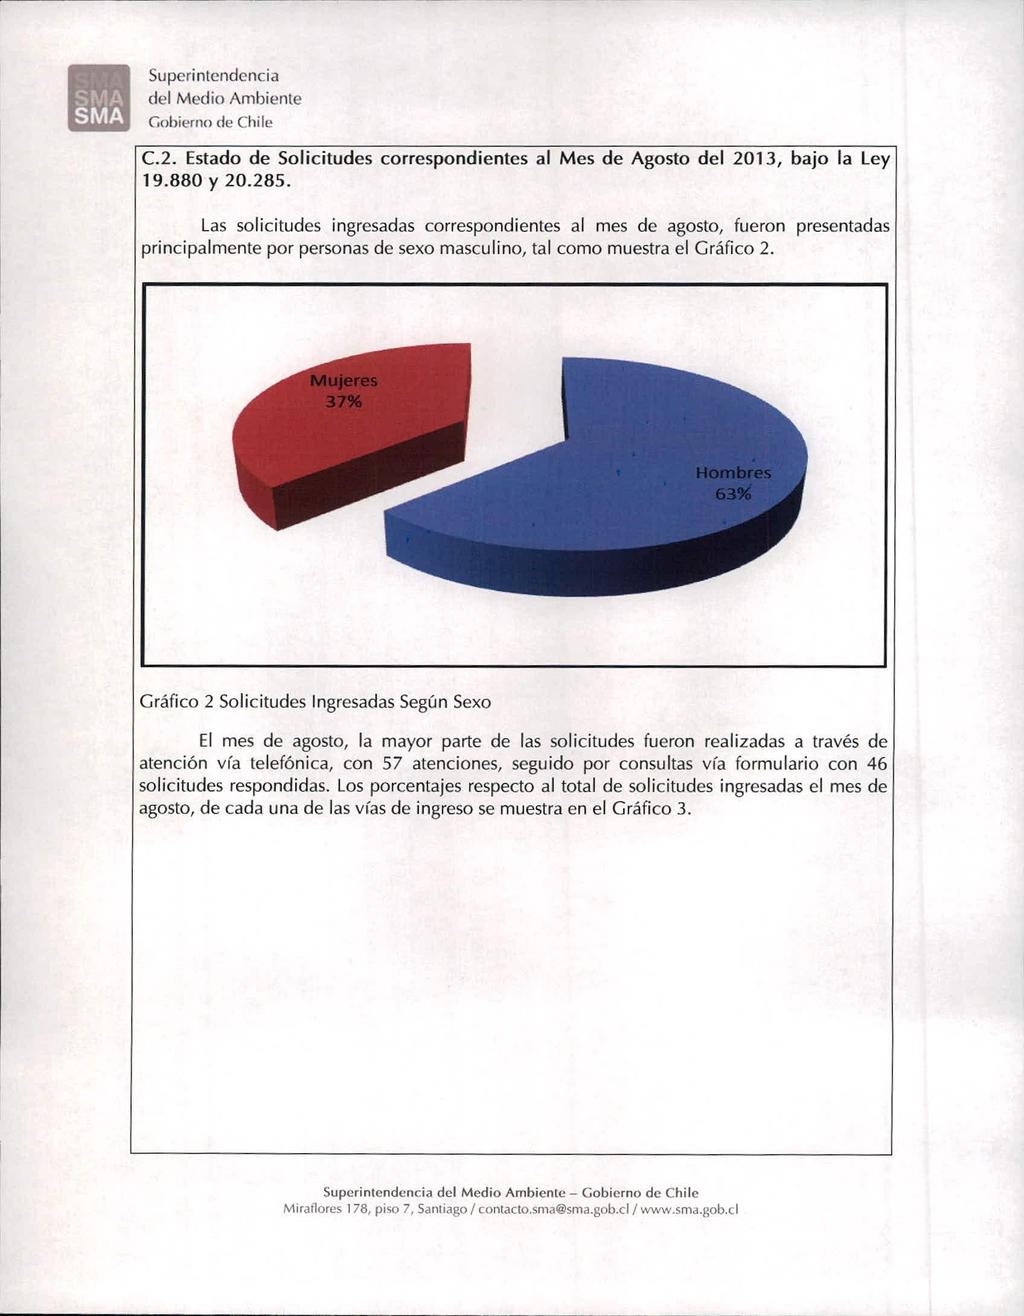 del Medio Ambiente ohierno de Chile C.2. Estado de Solicitudes correspondientes al Mes de Agosto del 2013, bajo la Ley 19.880 y 20.285.